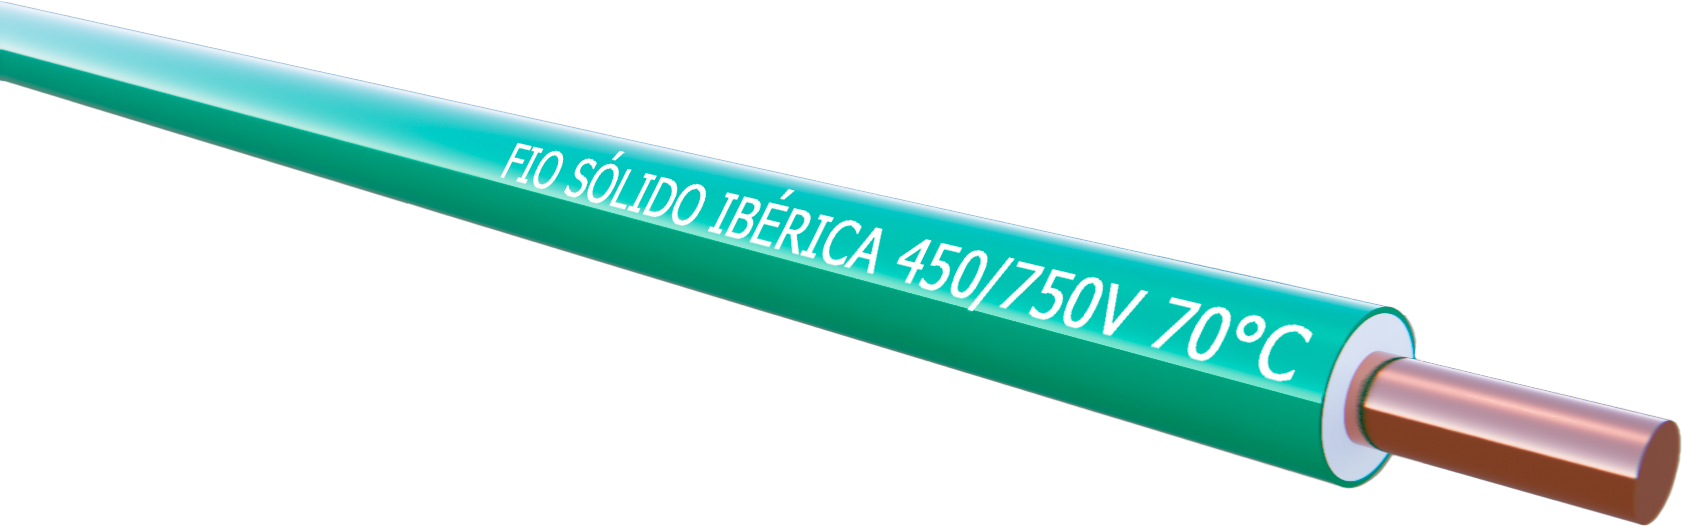 Fio Sólido Ibérica 450/750V